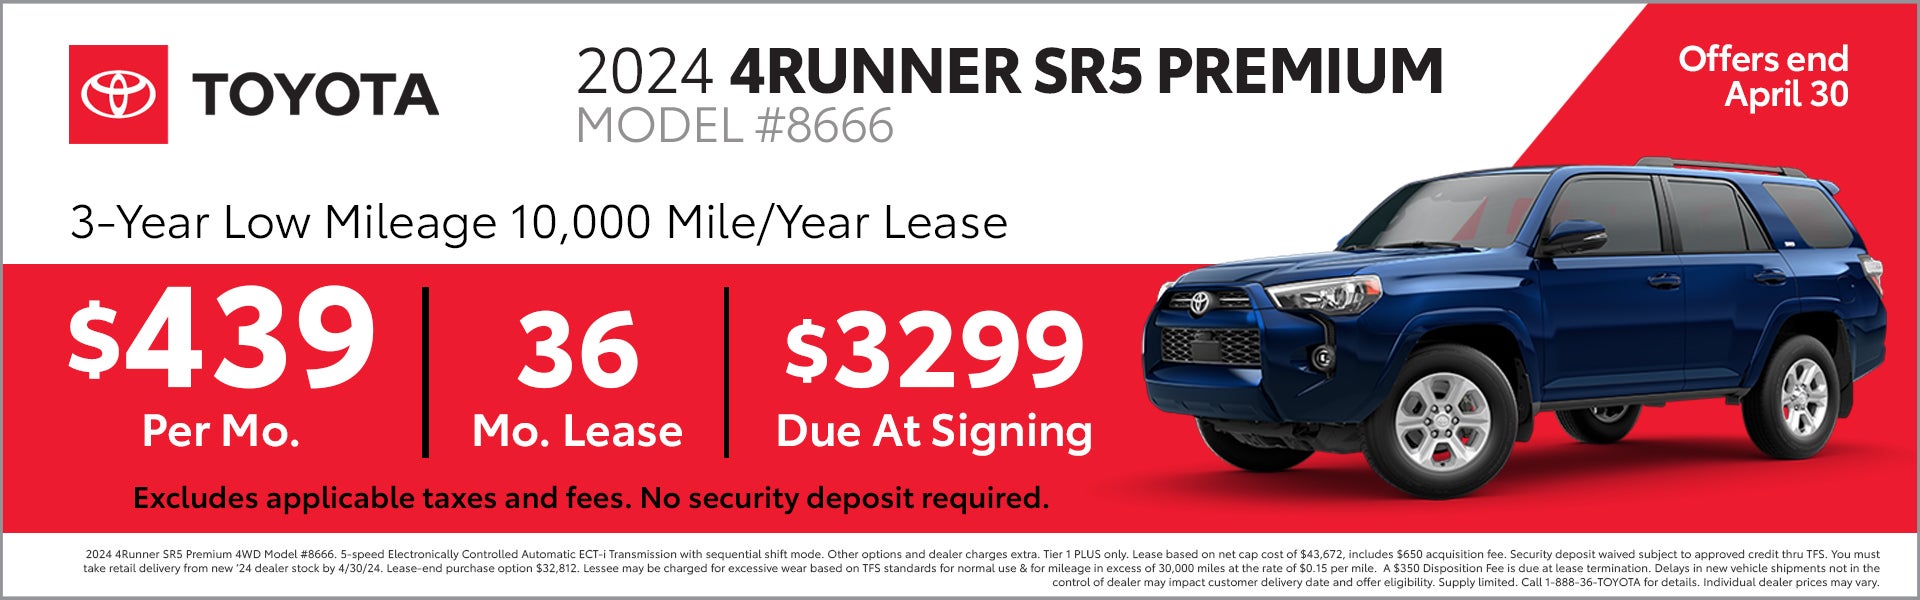 2024 4Runner SR5 Premium 